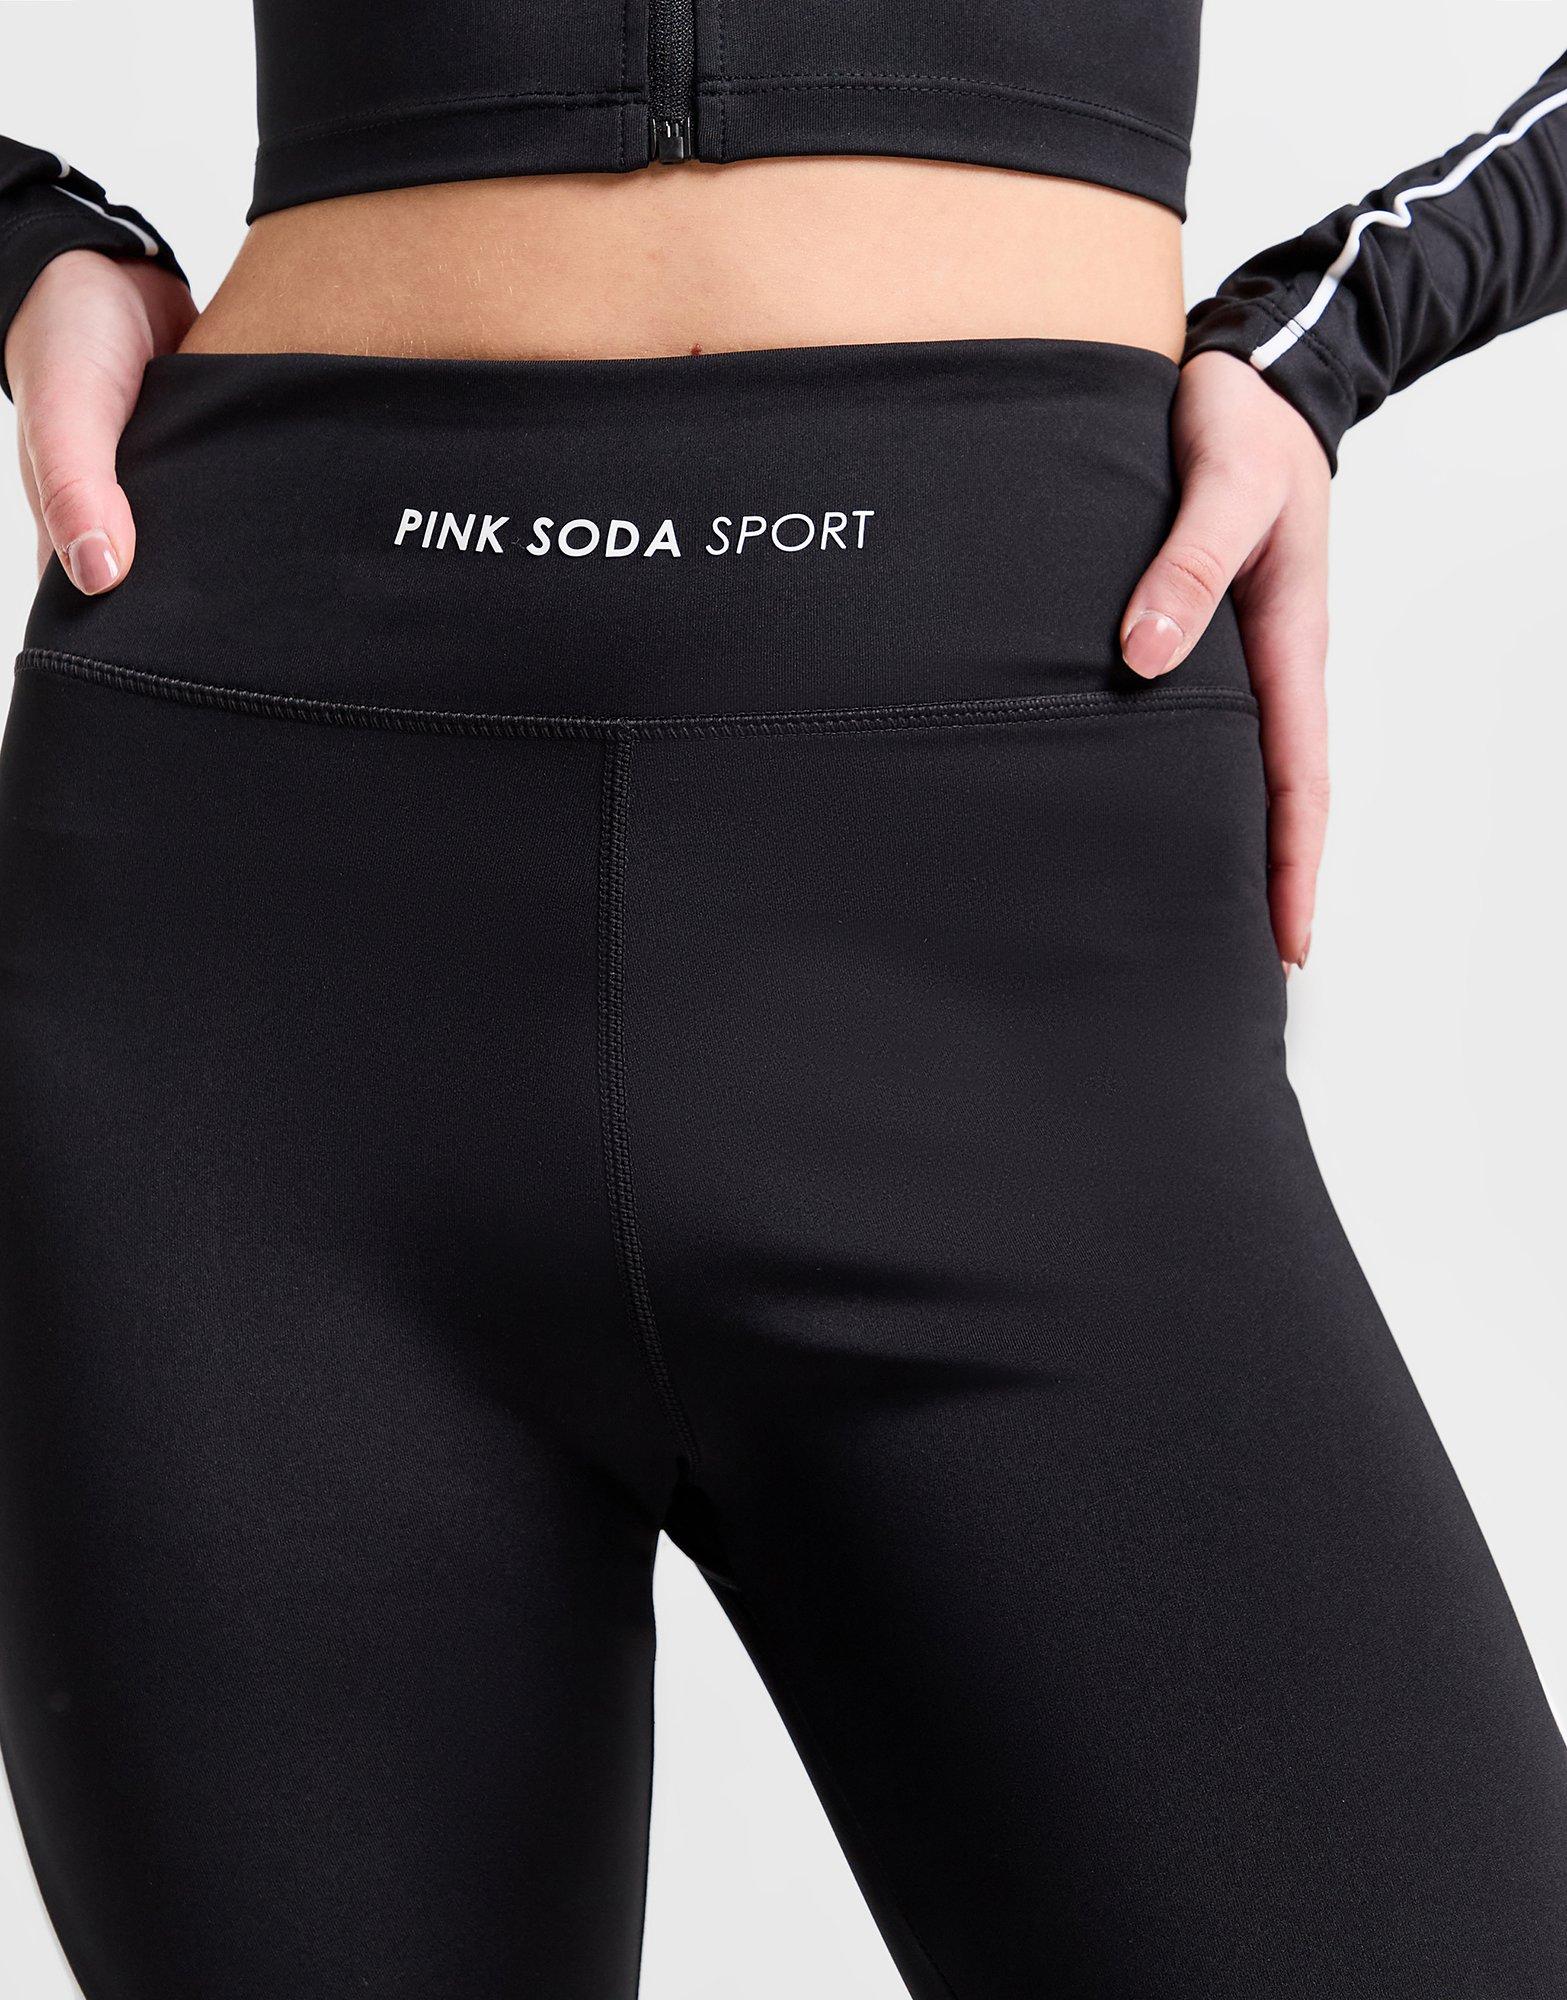 Black Pink Soda Sport Fuse Tights - JD Sports Global